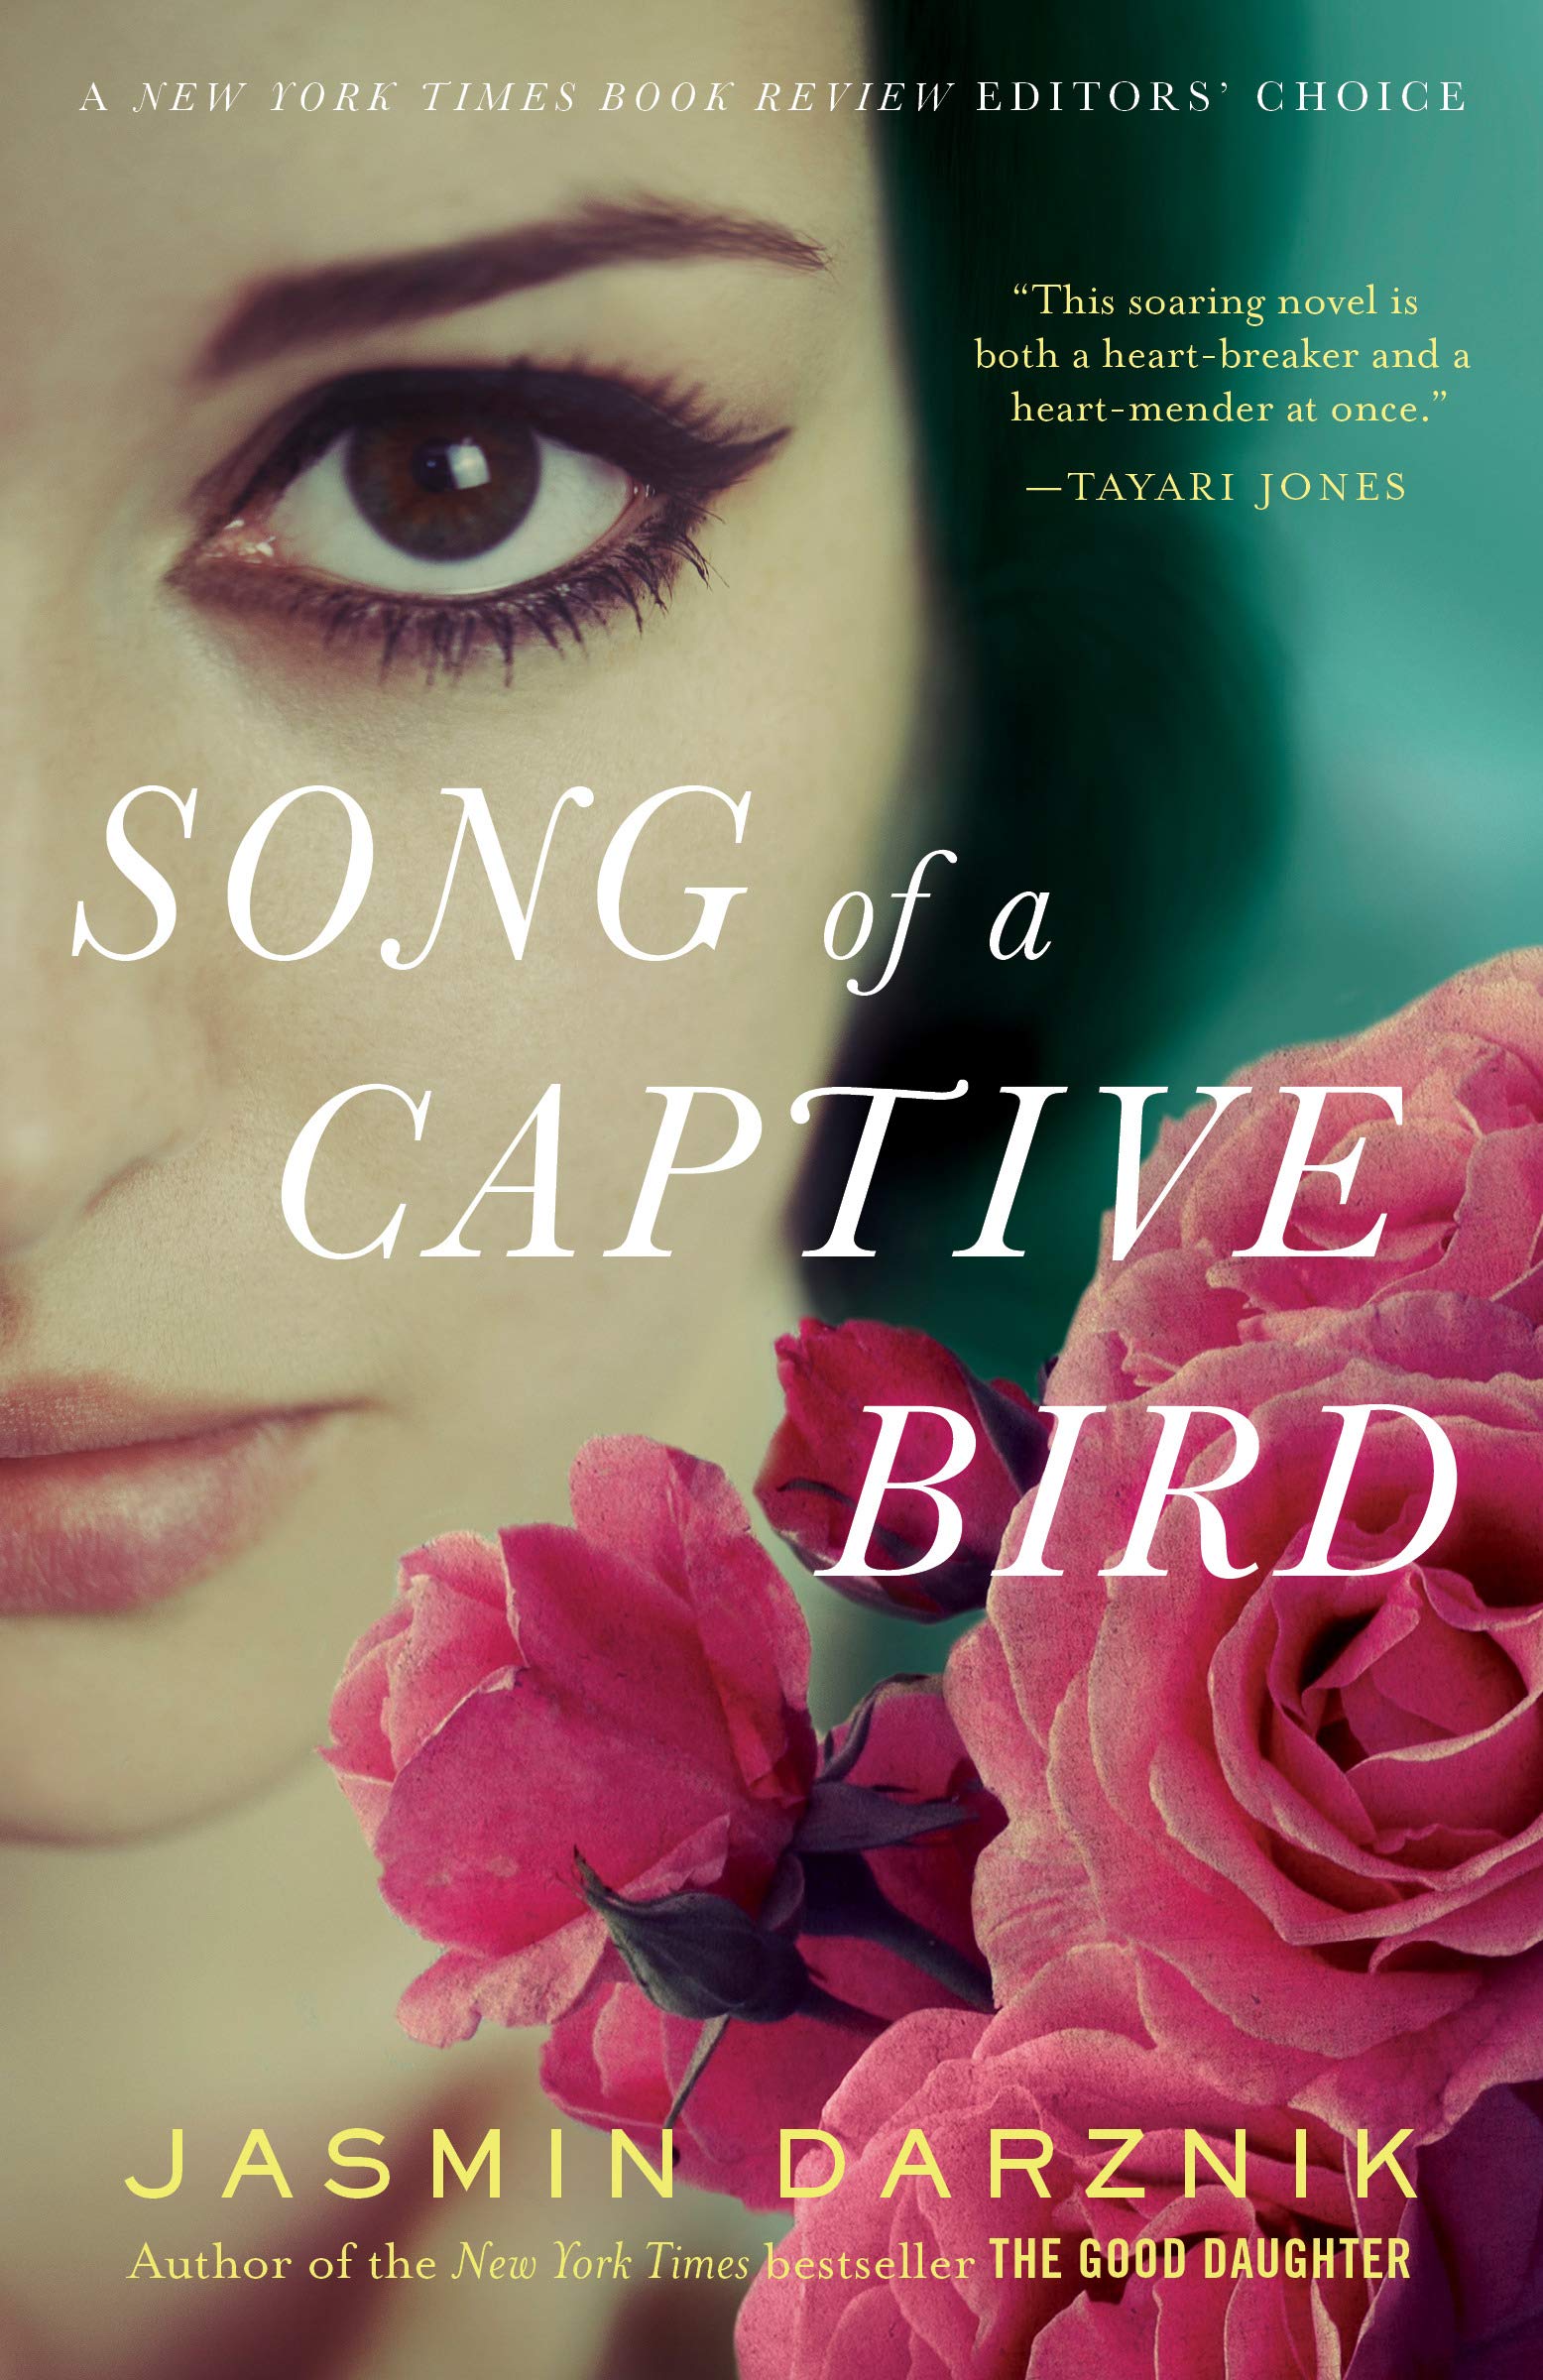 Song of a captive bird : a novel